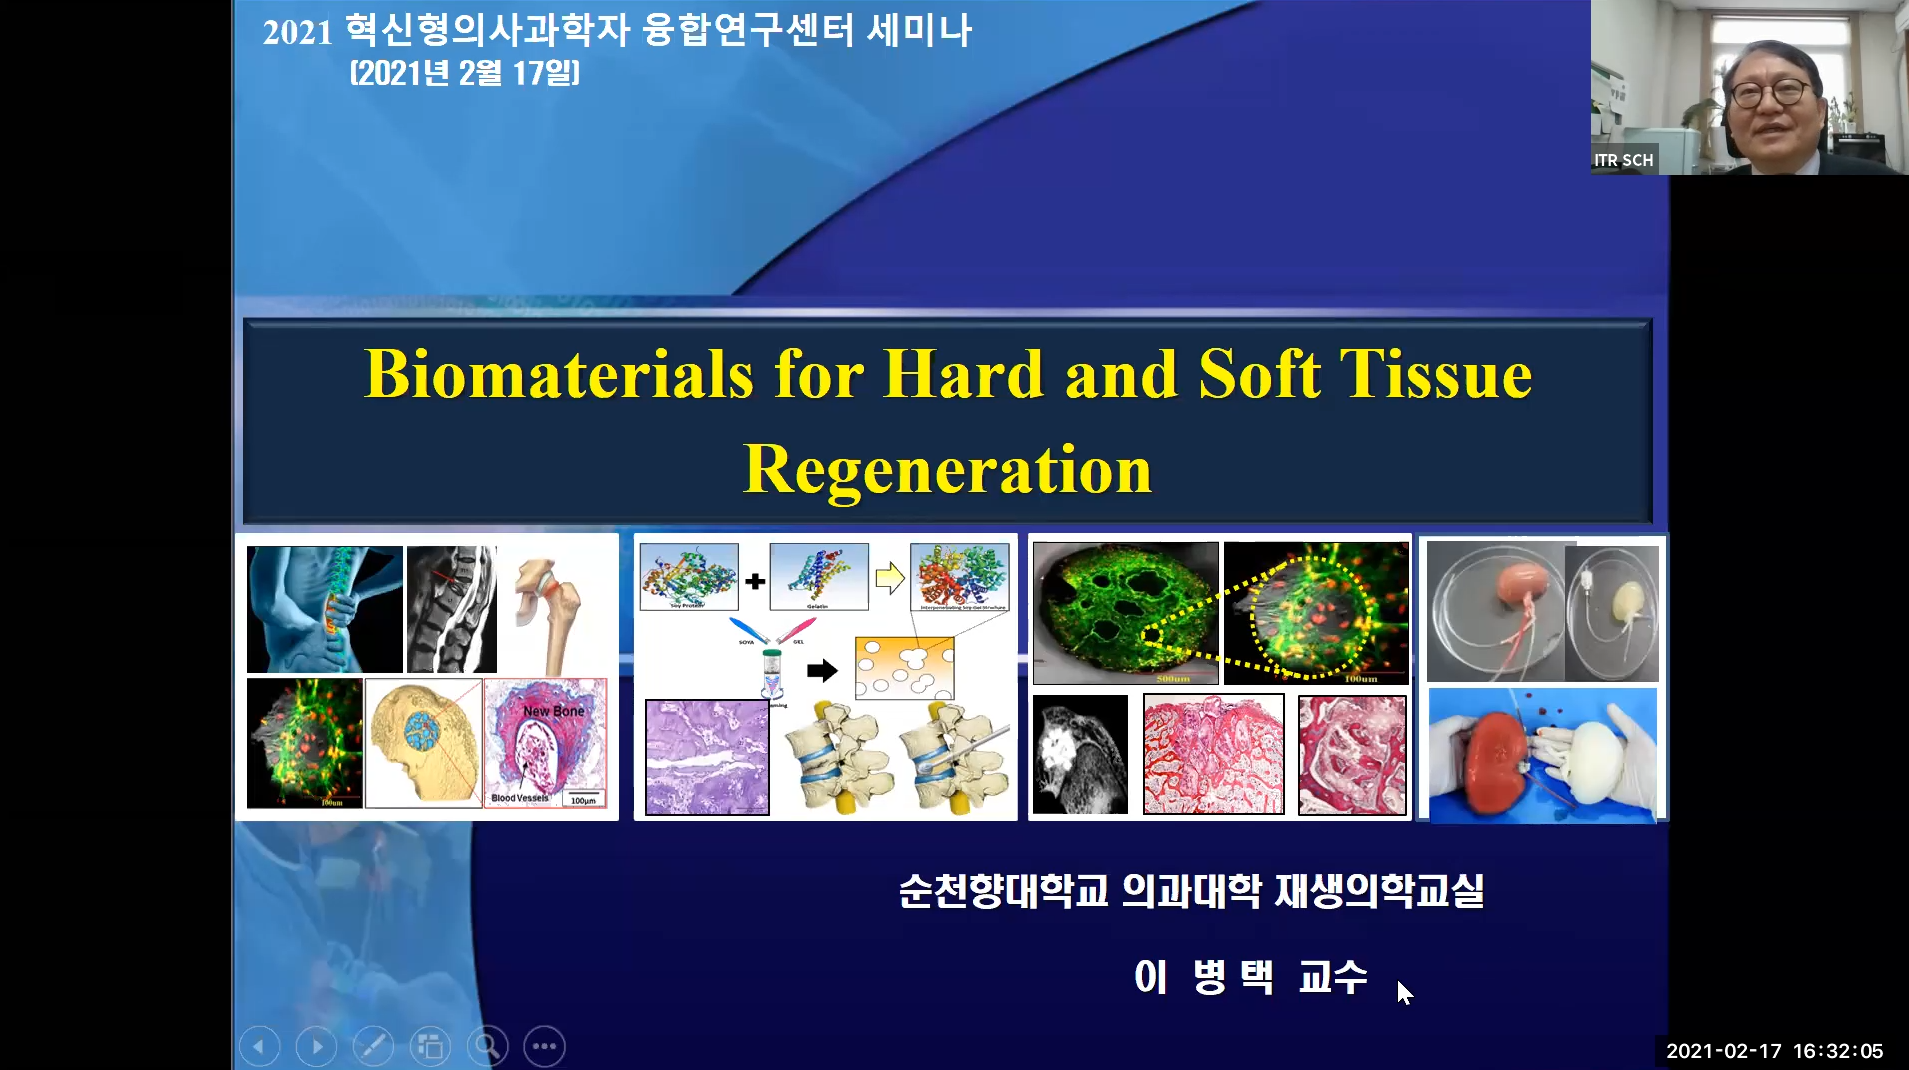 (교육)이병택 교수님 Biomaterials for Hard and Soft Tissue Regeneration 강의 이미지